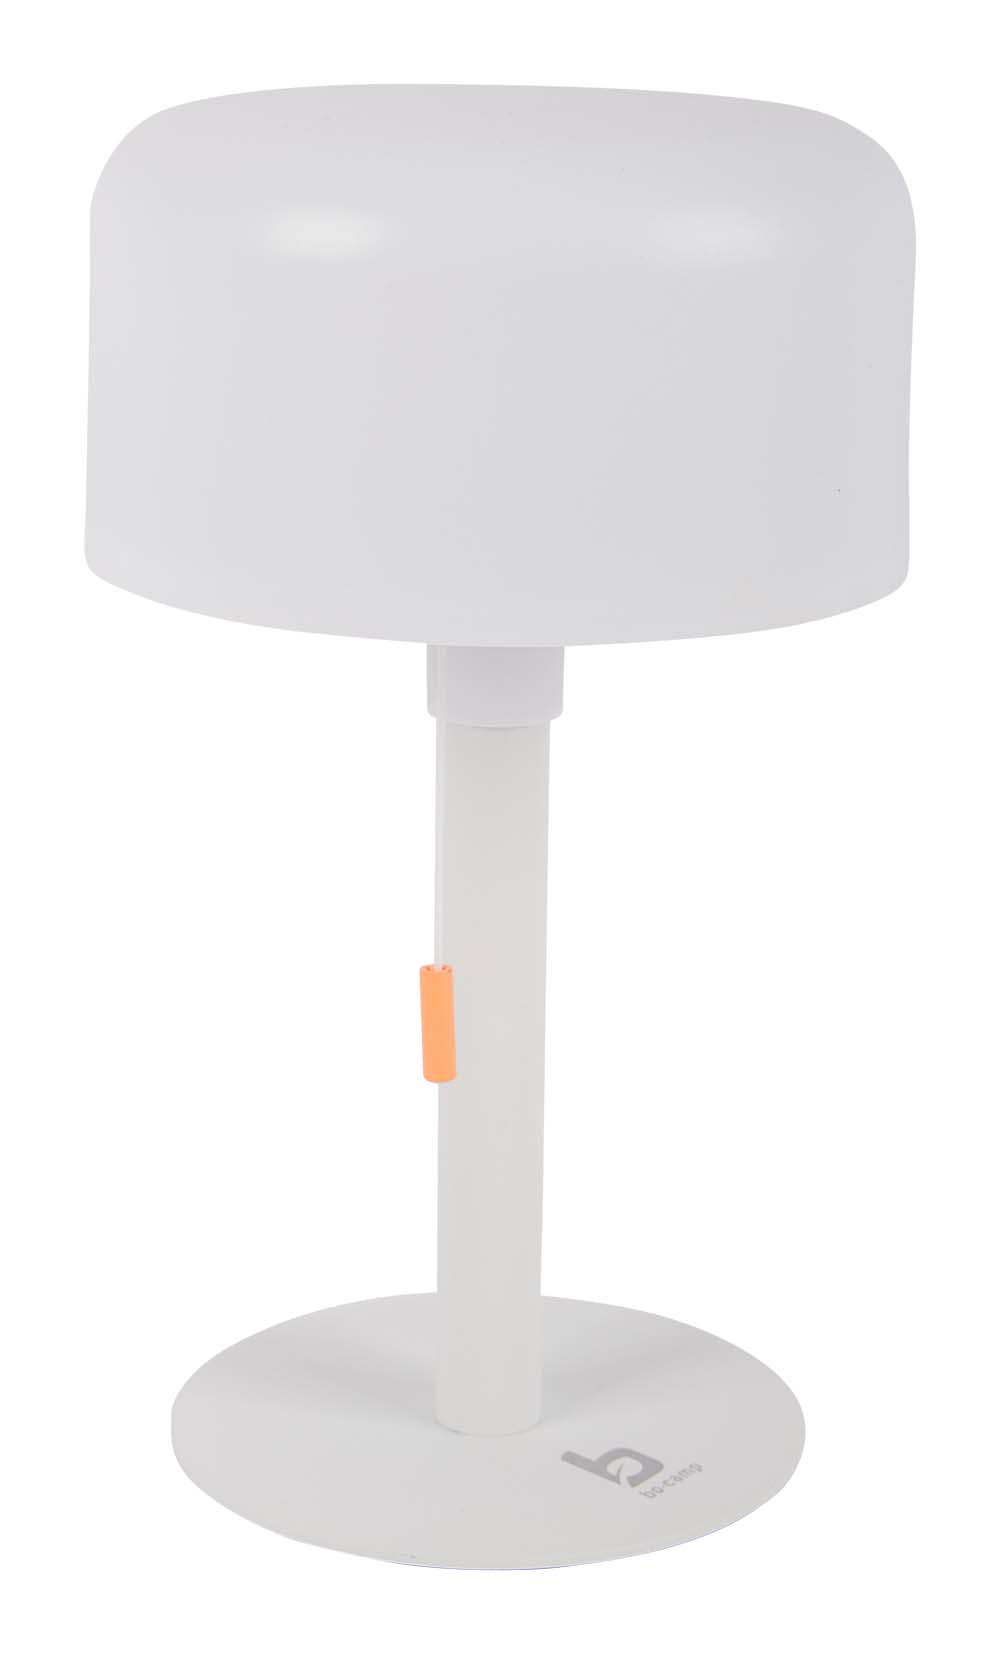 5818619 Una lámpara de sobremesa recargable de la colección Pastel. Proporciona una luz agradable gracias a la iluminación LED de color blanco cálido. Equipada con 3 modos de iluminación (25/50/100%). La batería de iones de litio incorporada se puede cargar con un cable USB incluido. Ideal para colocar sobre una mesa o un mueble.